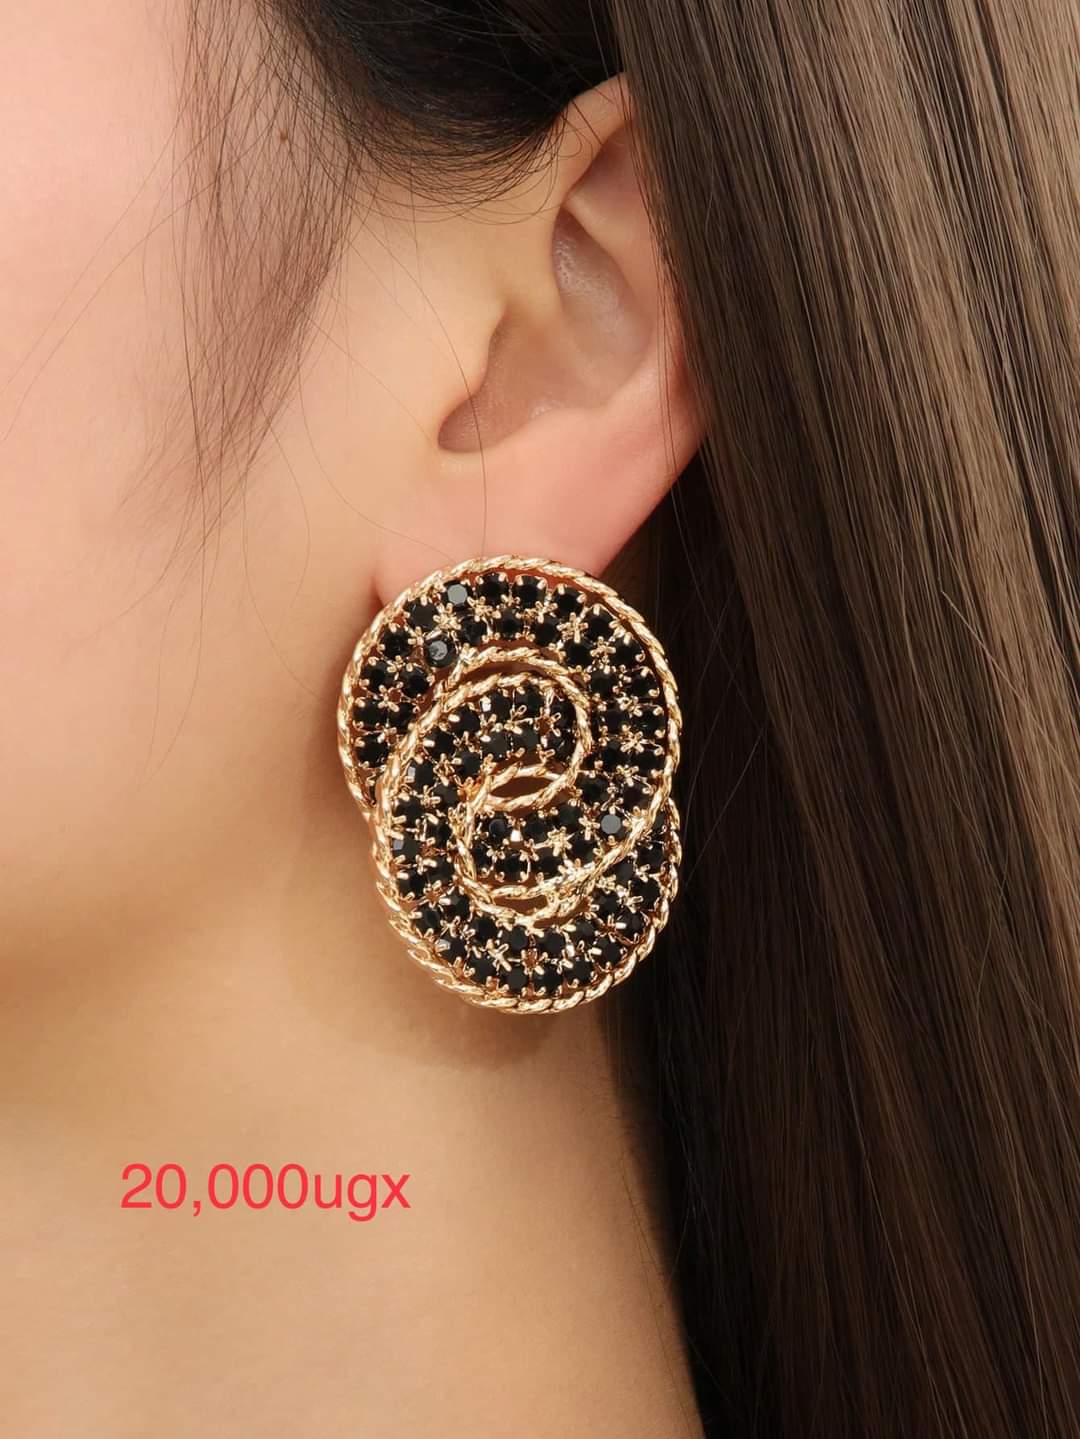 Cute earrings 